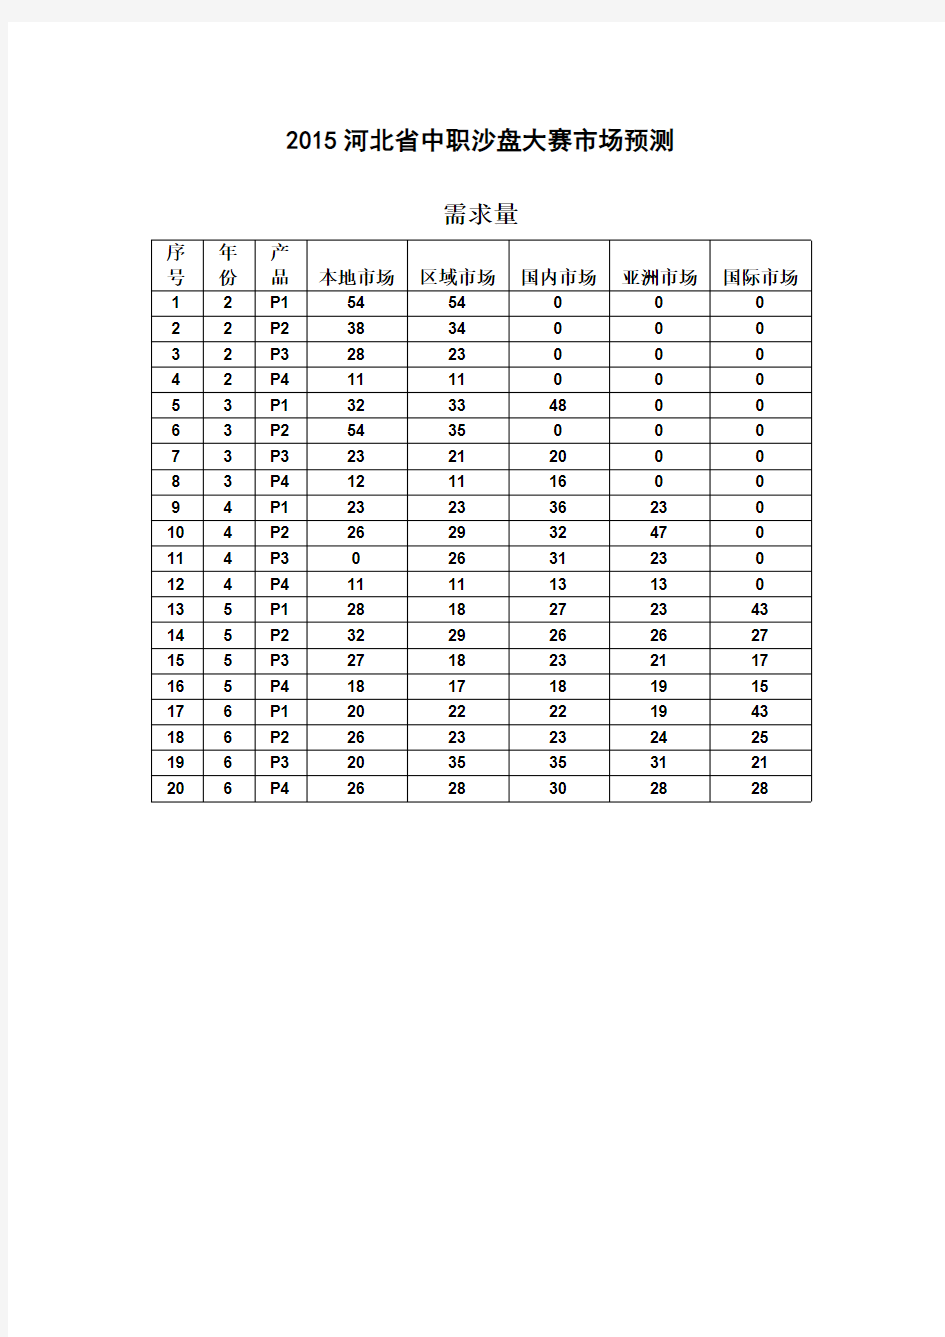 2015年河北省中职沙盘大赛市场预测